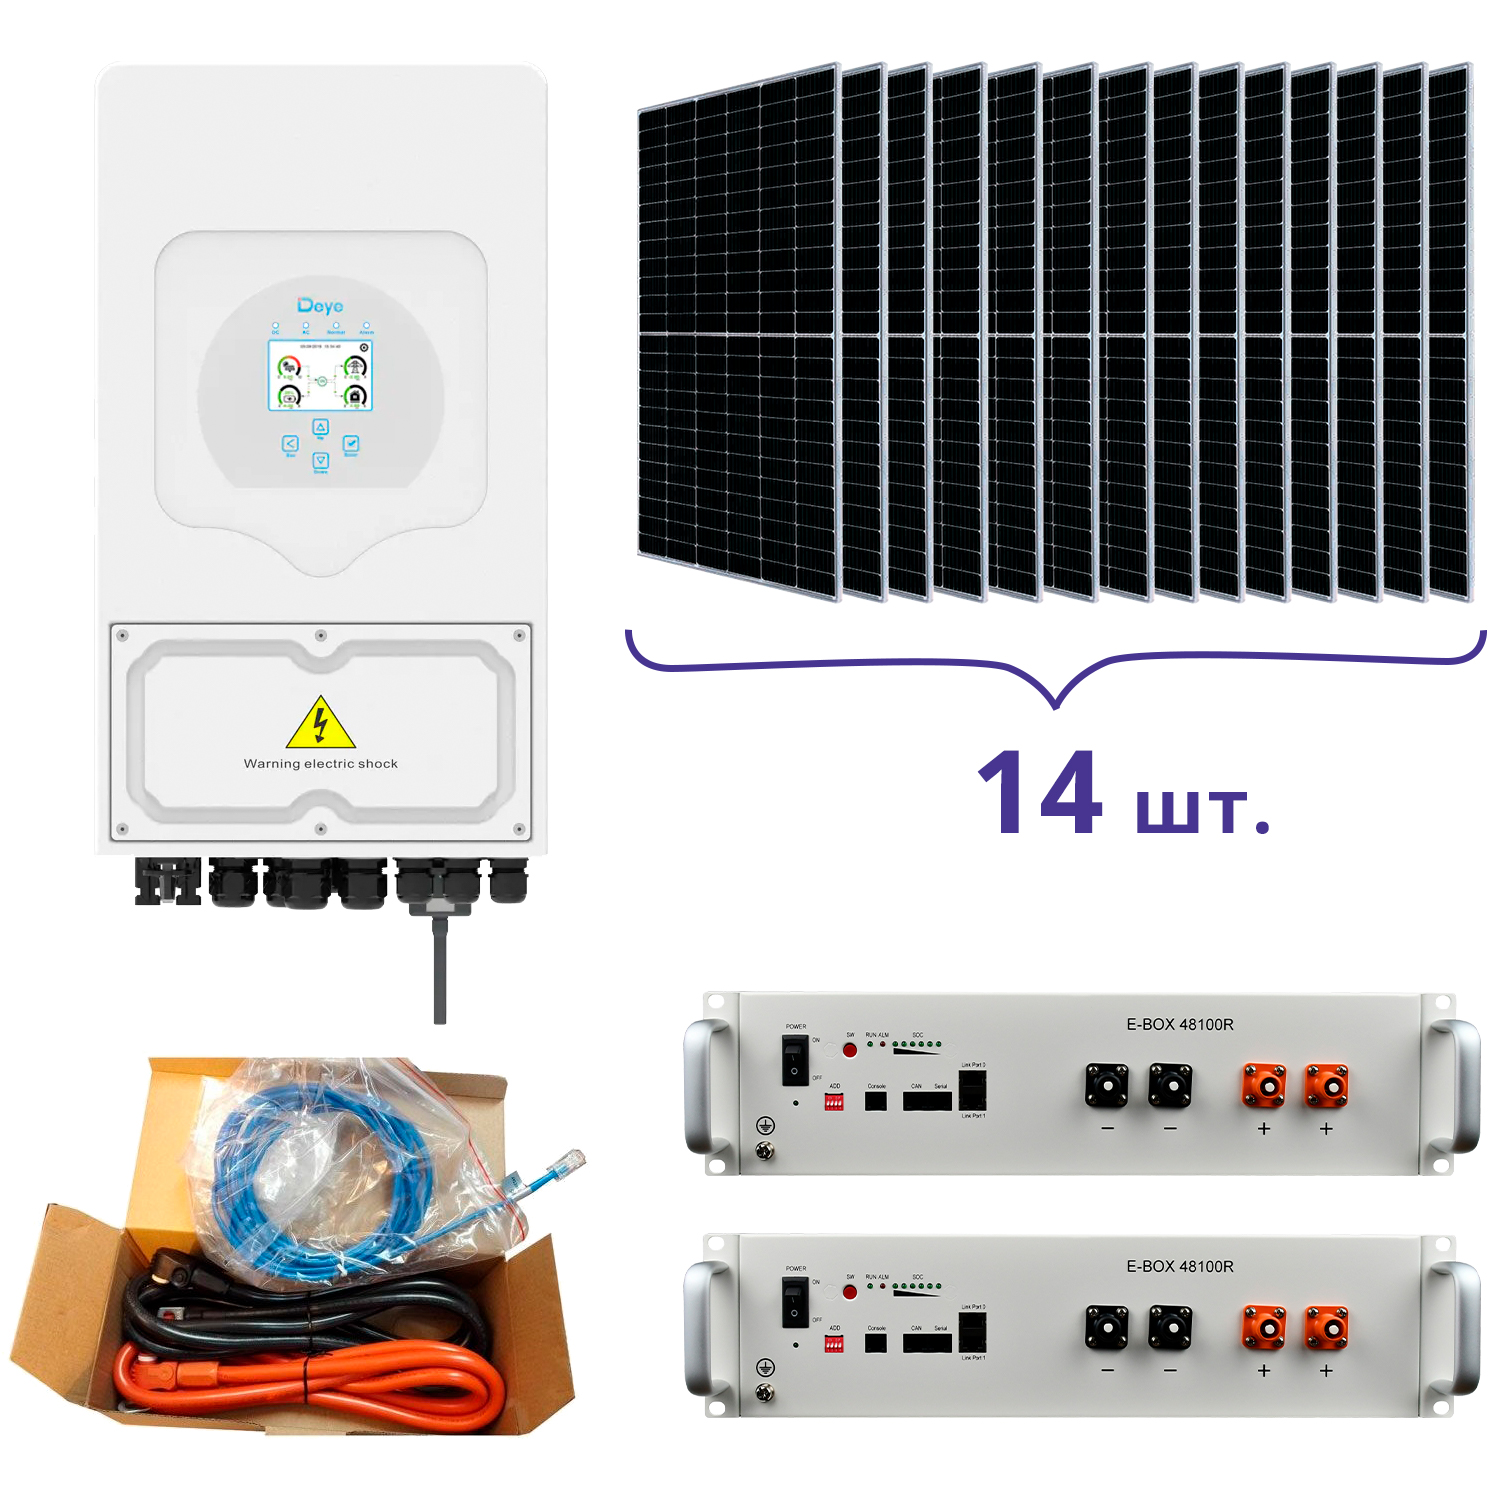 Відгуки система резервного живлення Deye SUN-5K-SG03LP1-EU+Pytes E-BOX-48100R-2шт.+Battery Cable Kit-1шт.+JA Solar JAM72S20-460/MR 460 Wp, Mono-14шт.